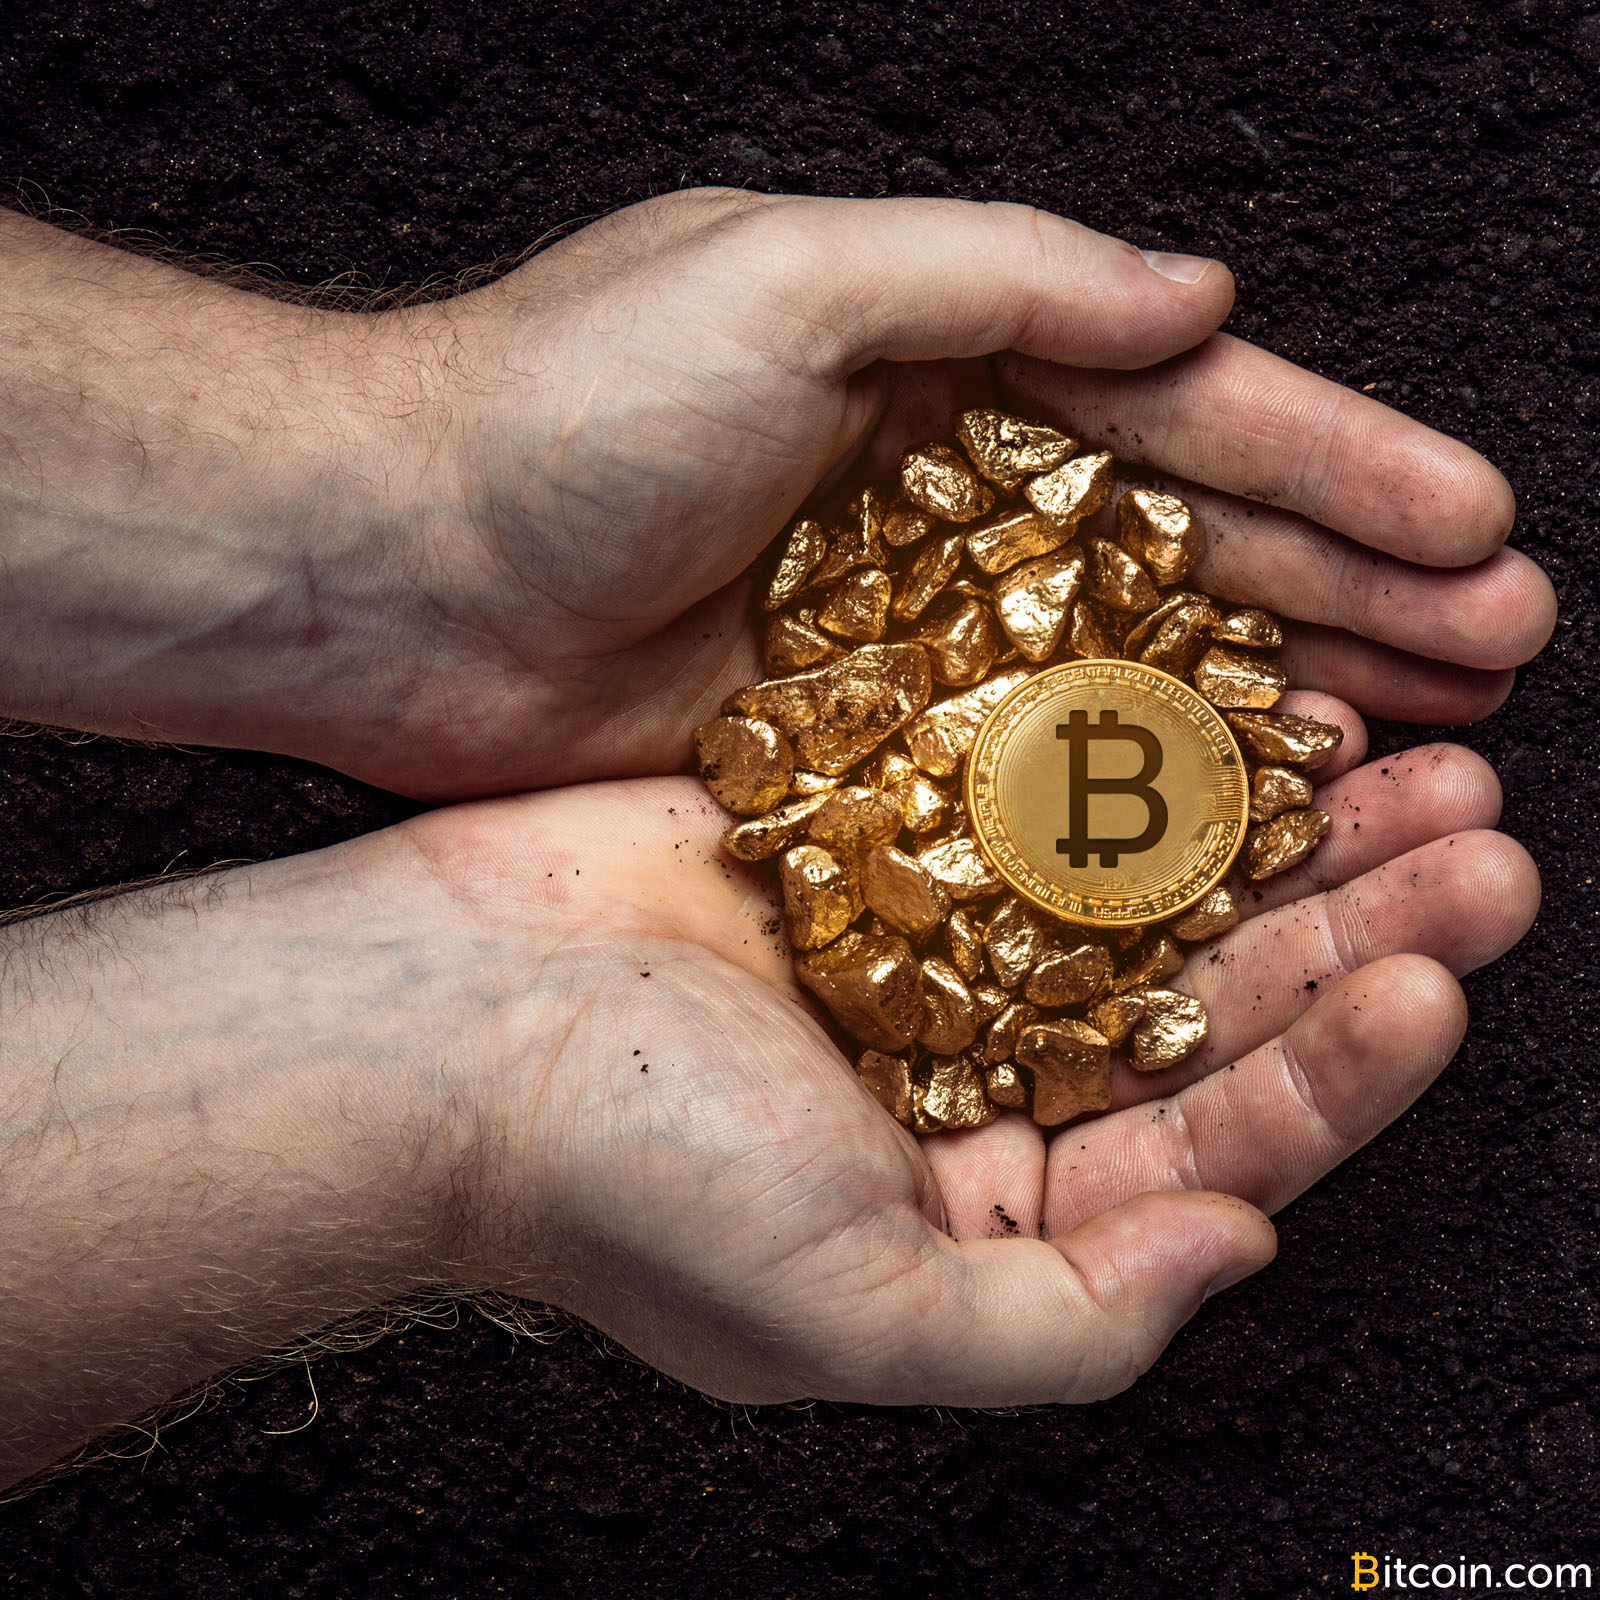 Bitcoin - Ideje az adózással is foglalkozni